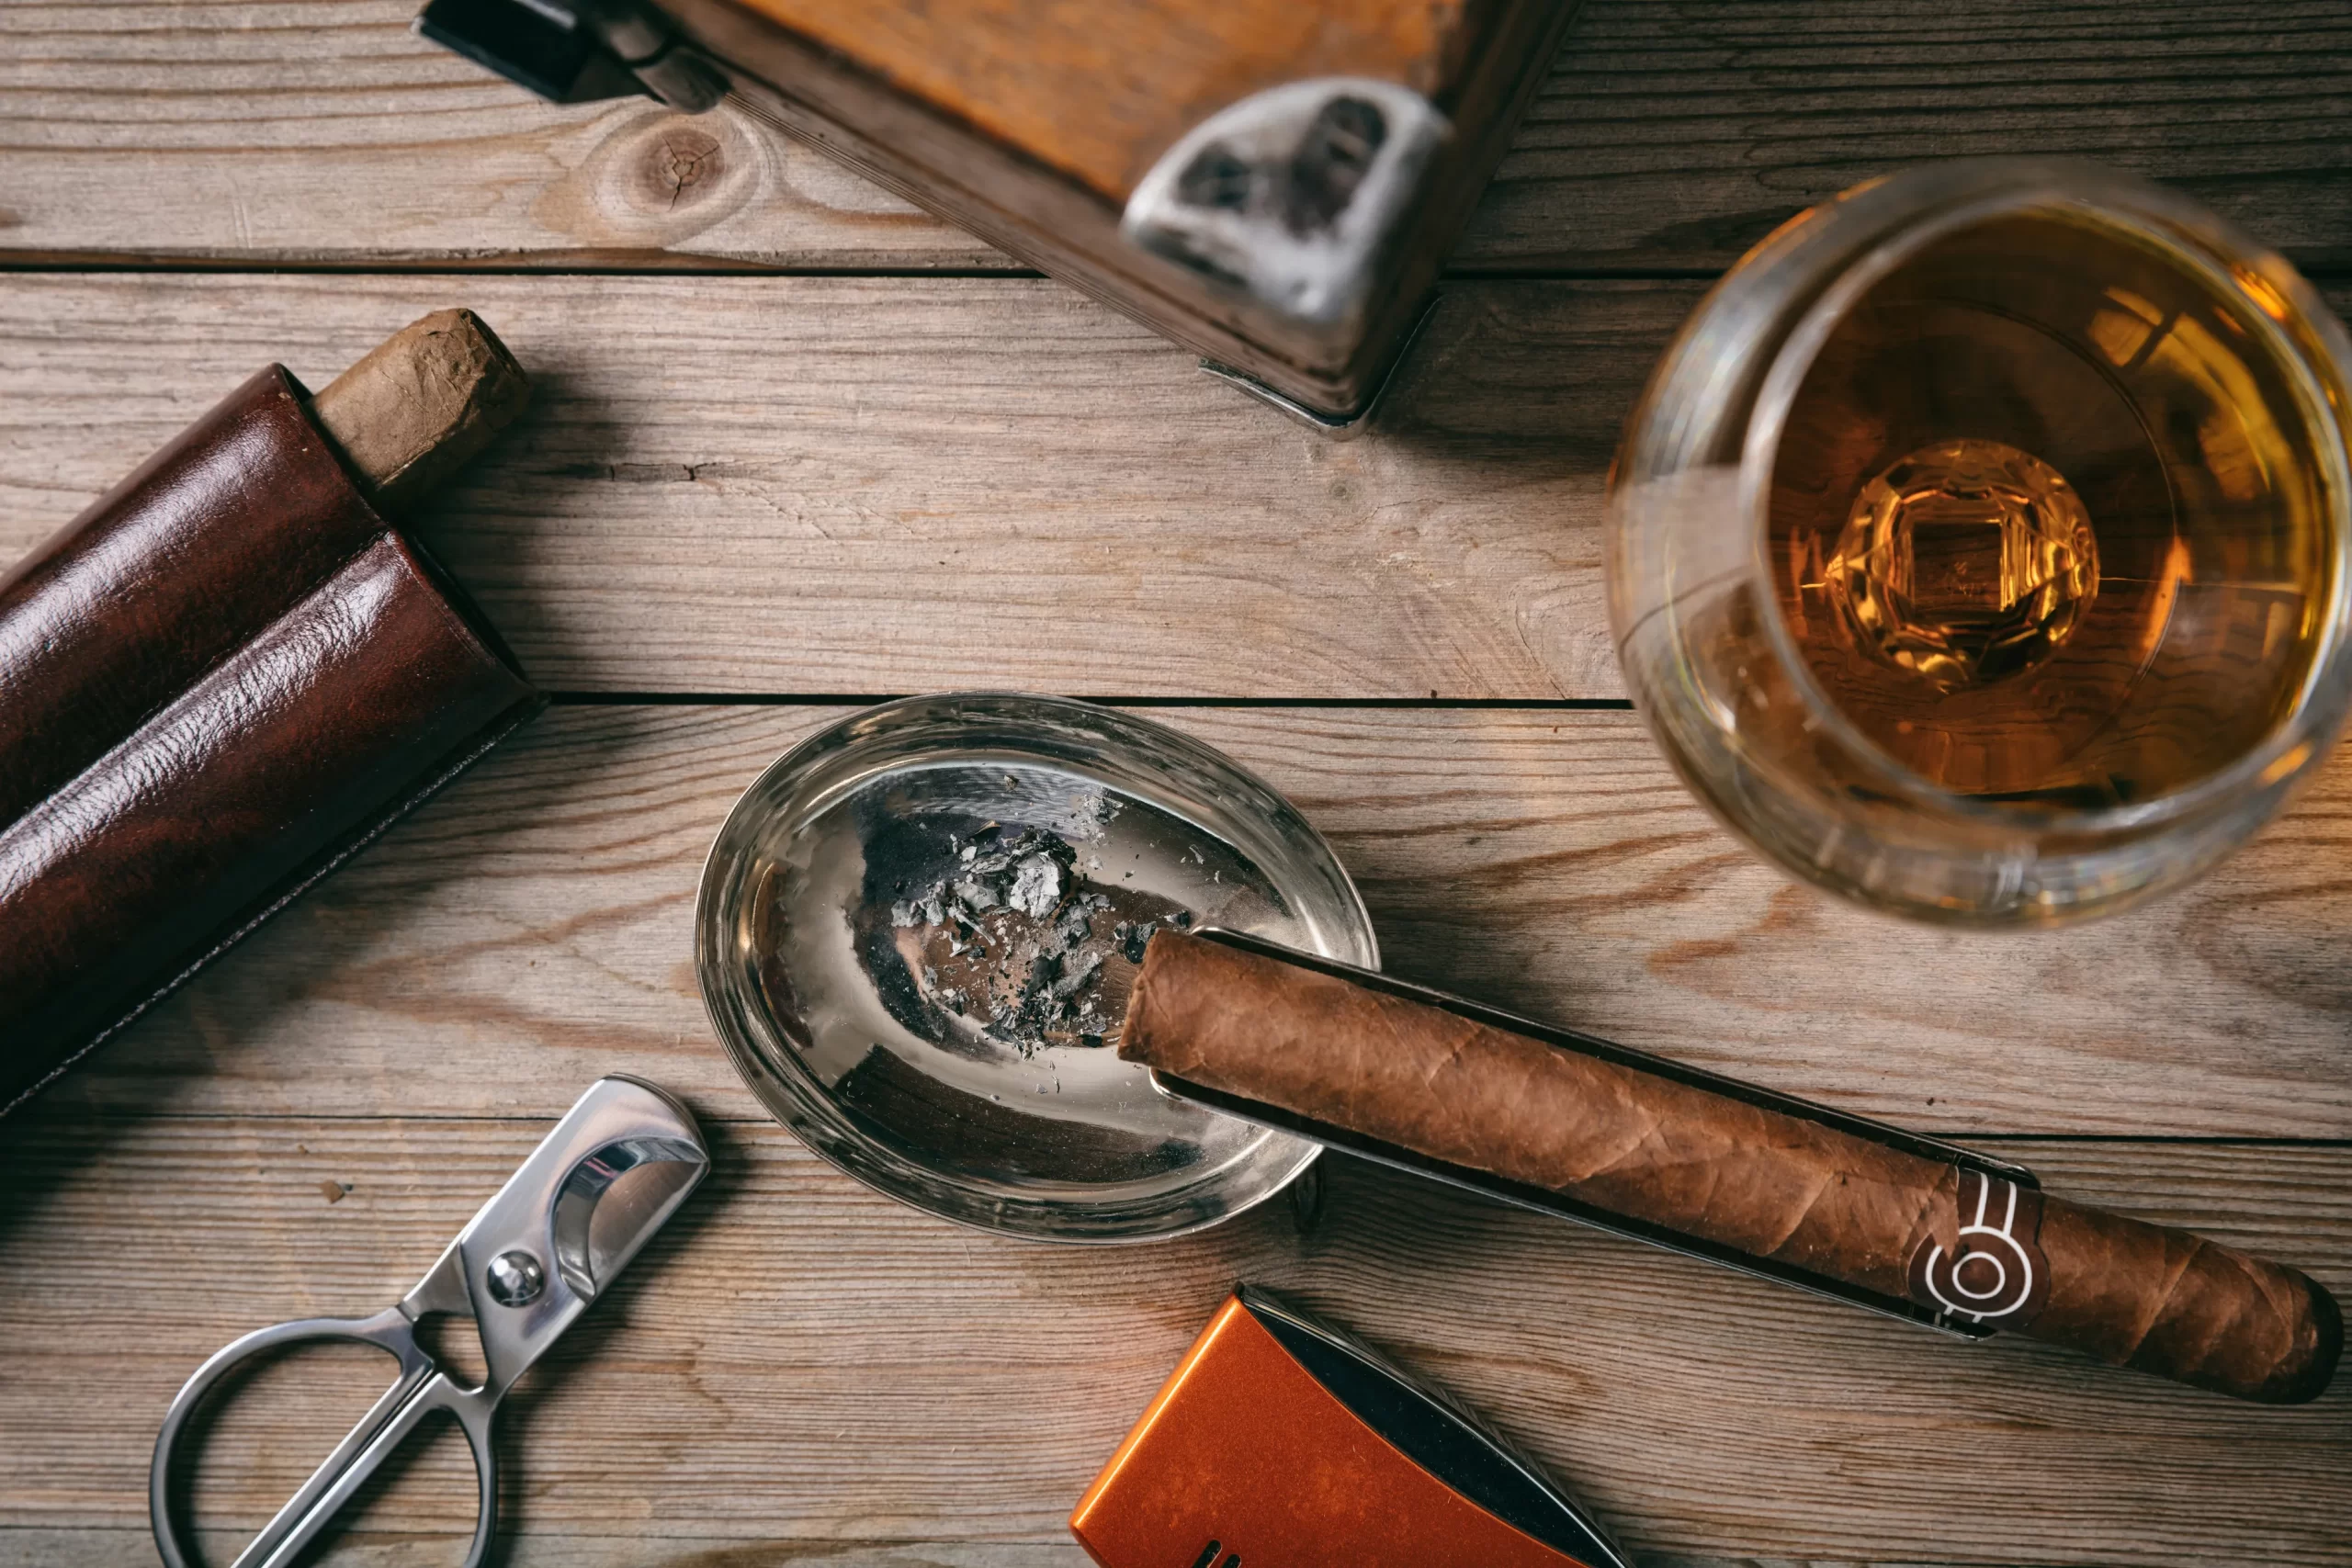 Cigars 101: a how-to guide for enjoying tobacco like a true cigar aficionado